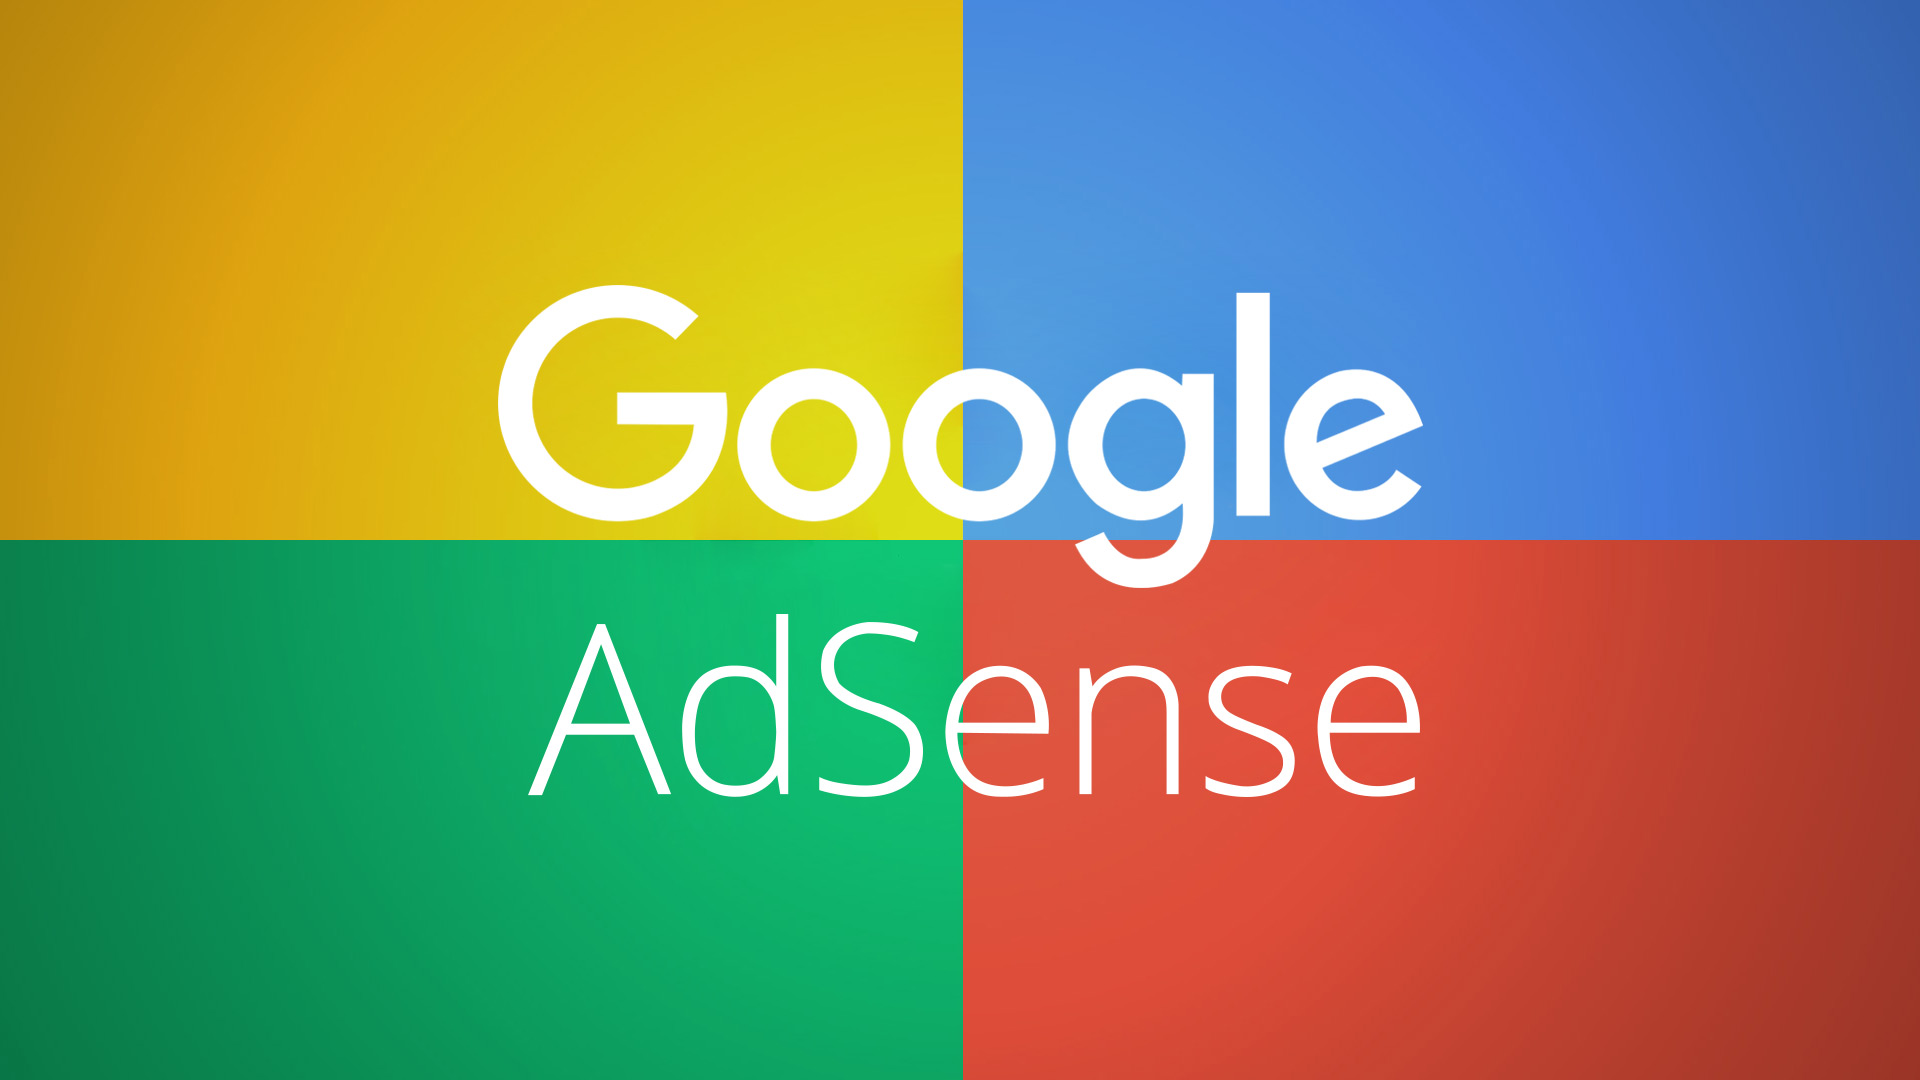 google adsense tips and tricks in hindi